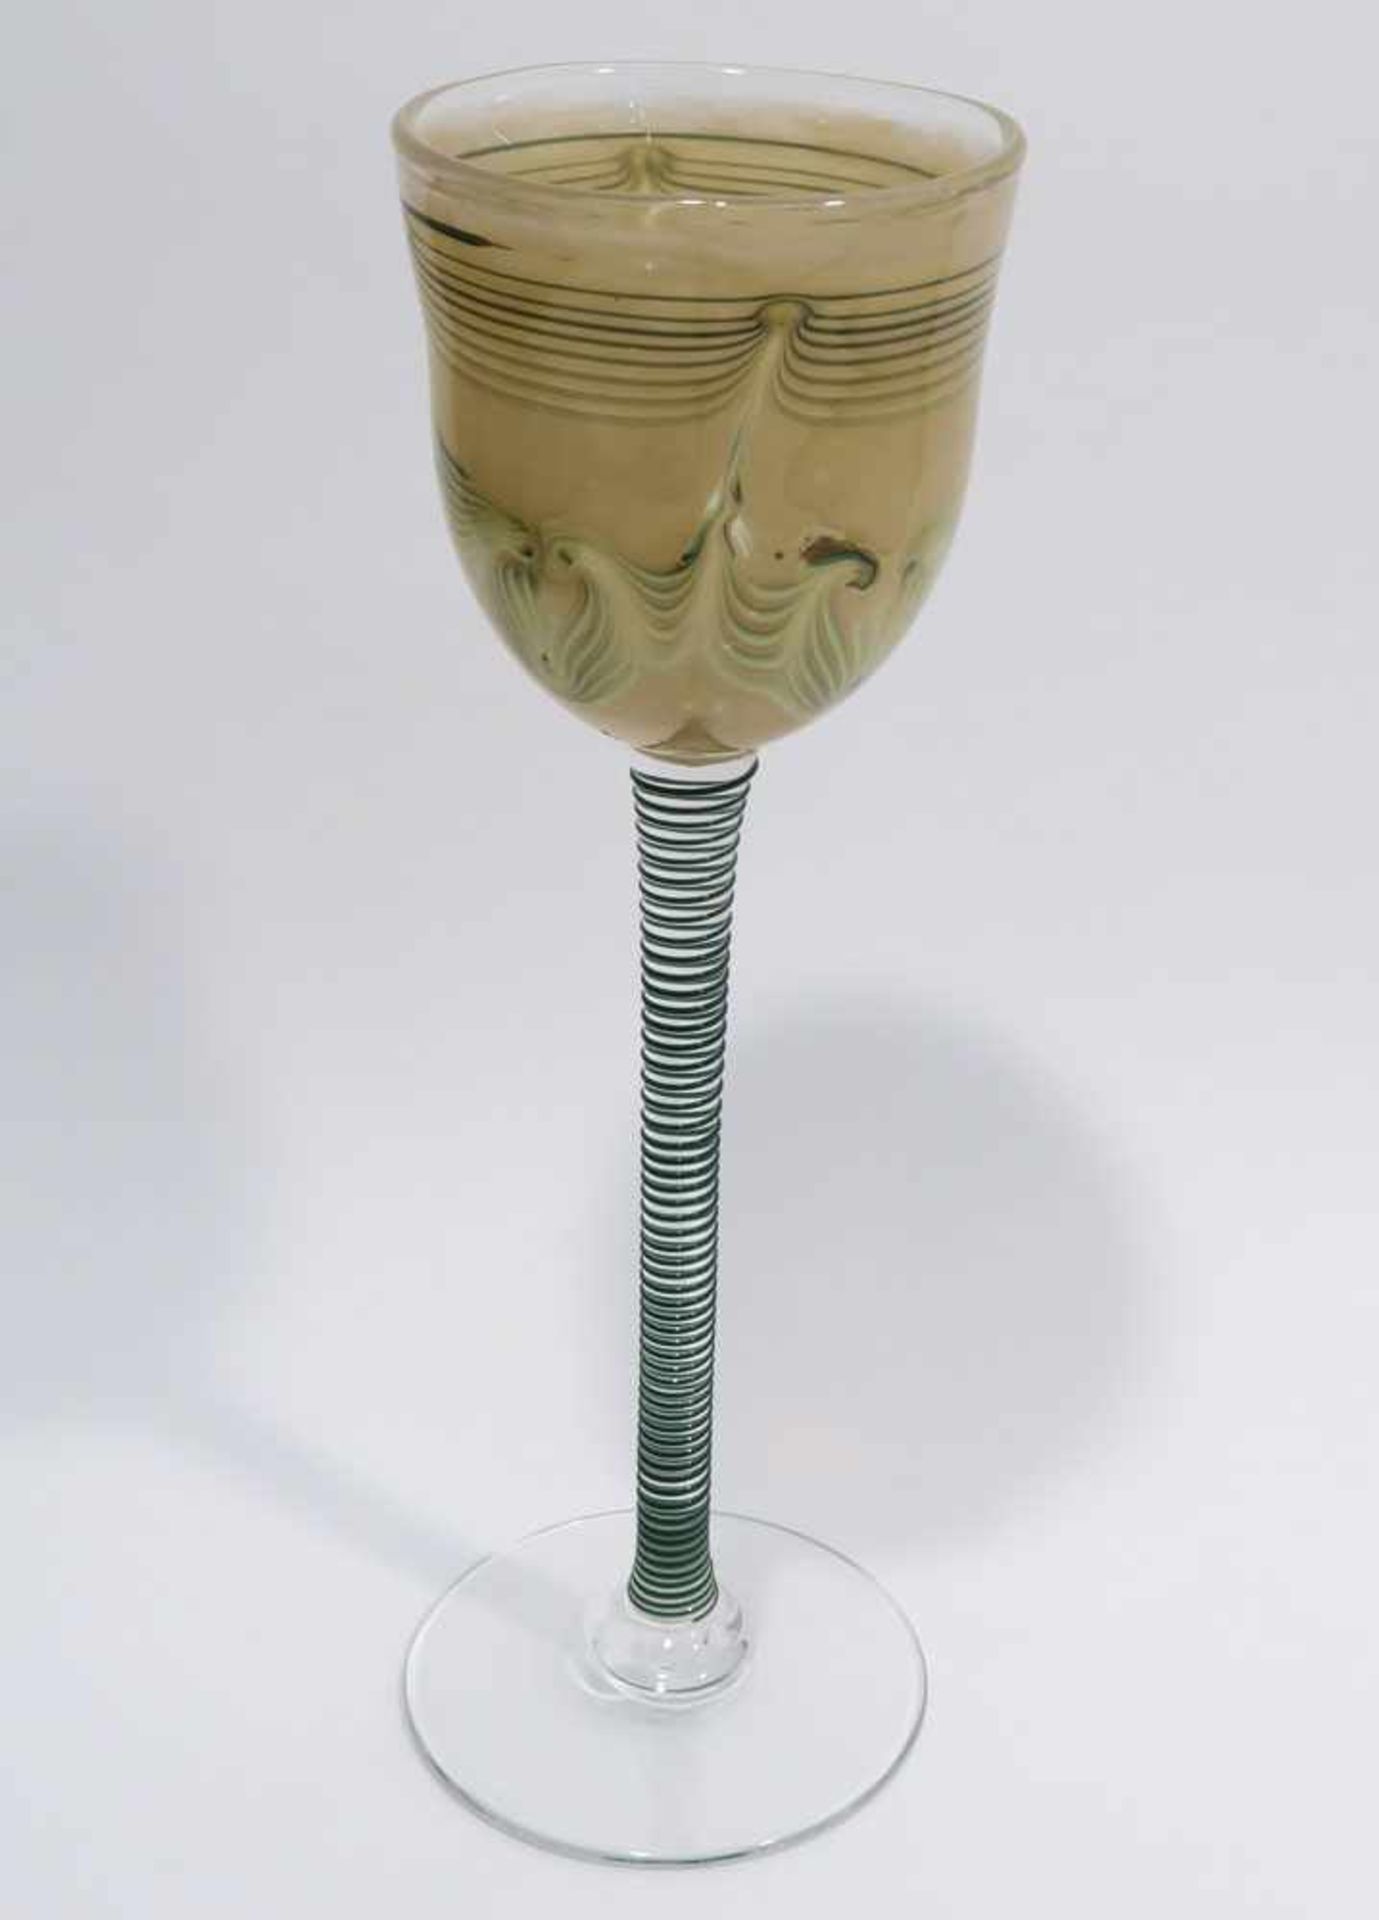 PokalGlashütte Eisch, Frauenau, datiert 1983. Farbloses Überfangglas mit gekämmtem grünen Dekor, auf